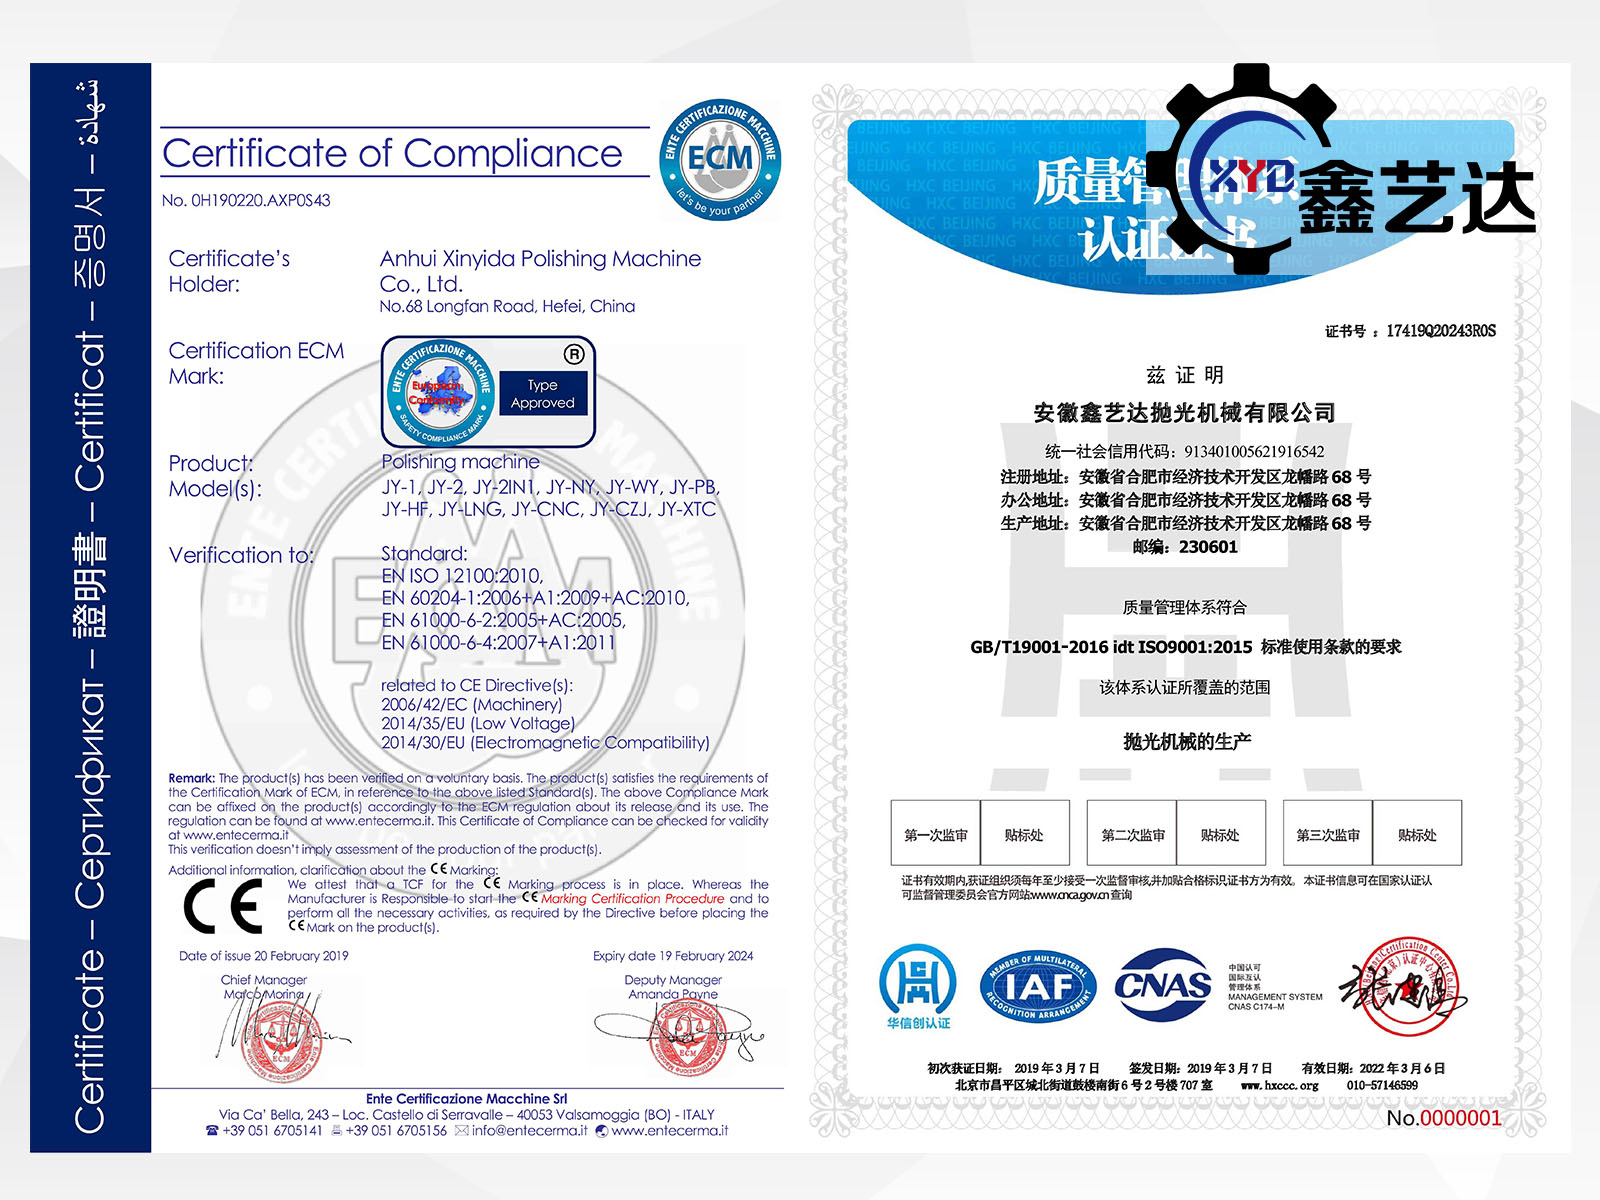 祝贺我司顺利通过CE和ISO9001